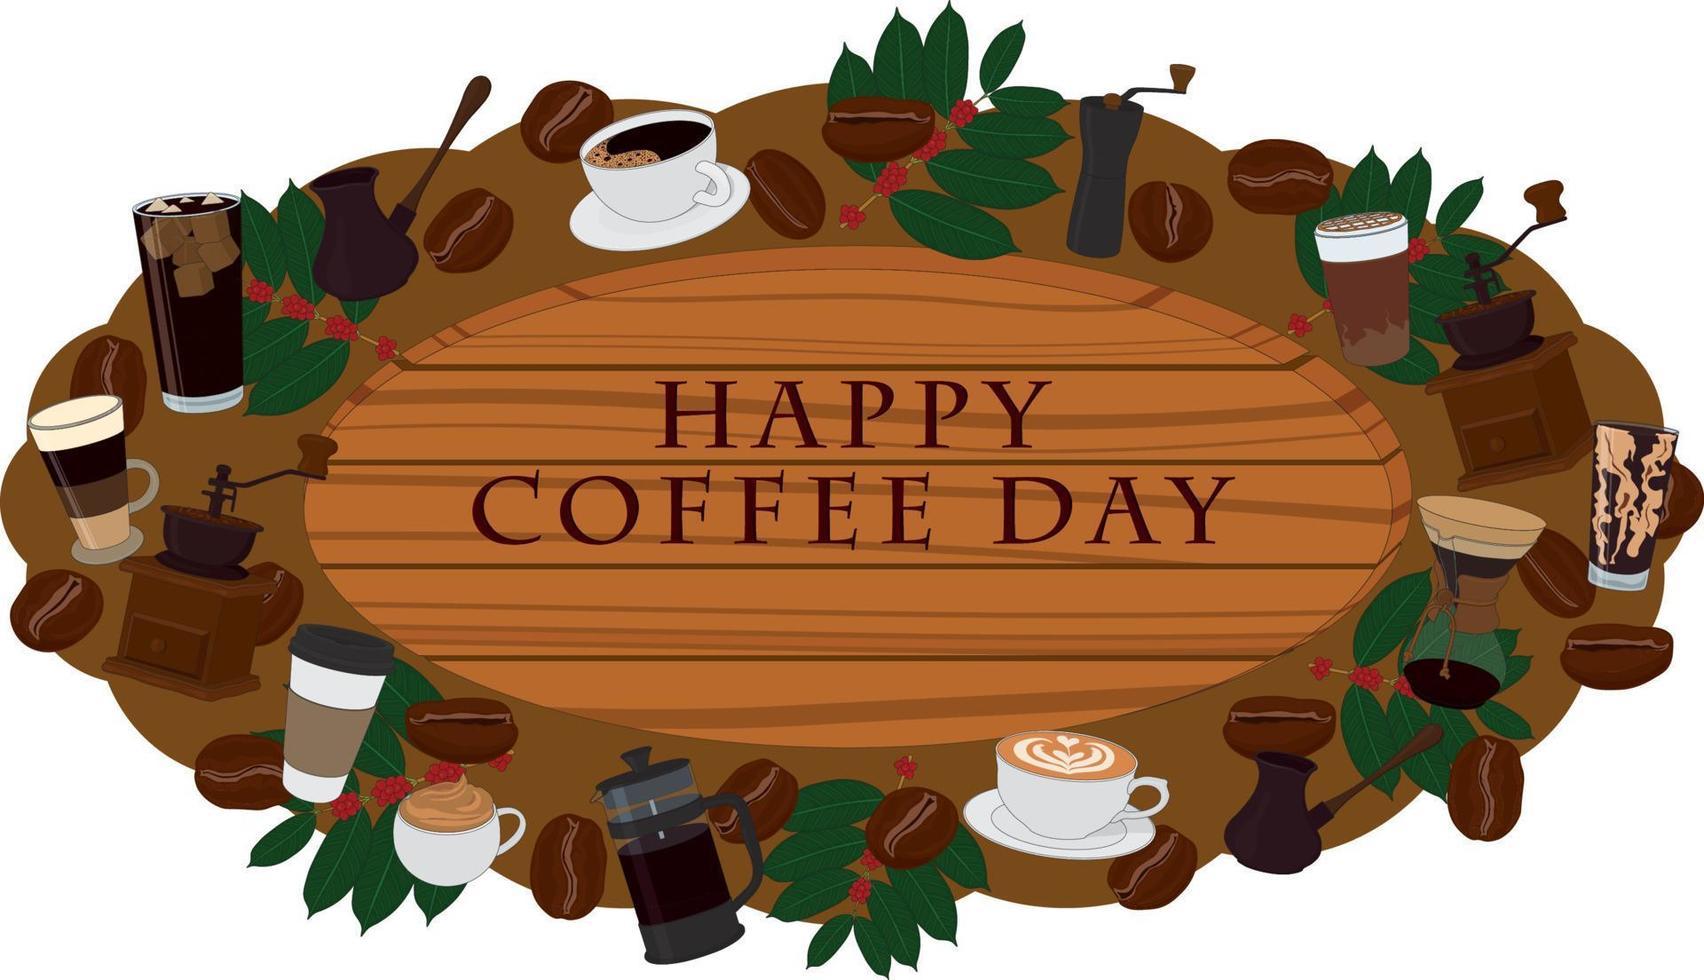 Feliz día del café letrero de madera decorado con vector de artículos de café